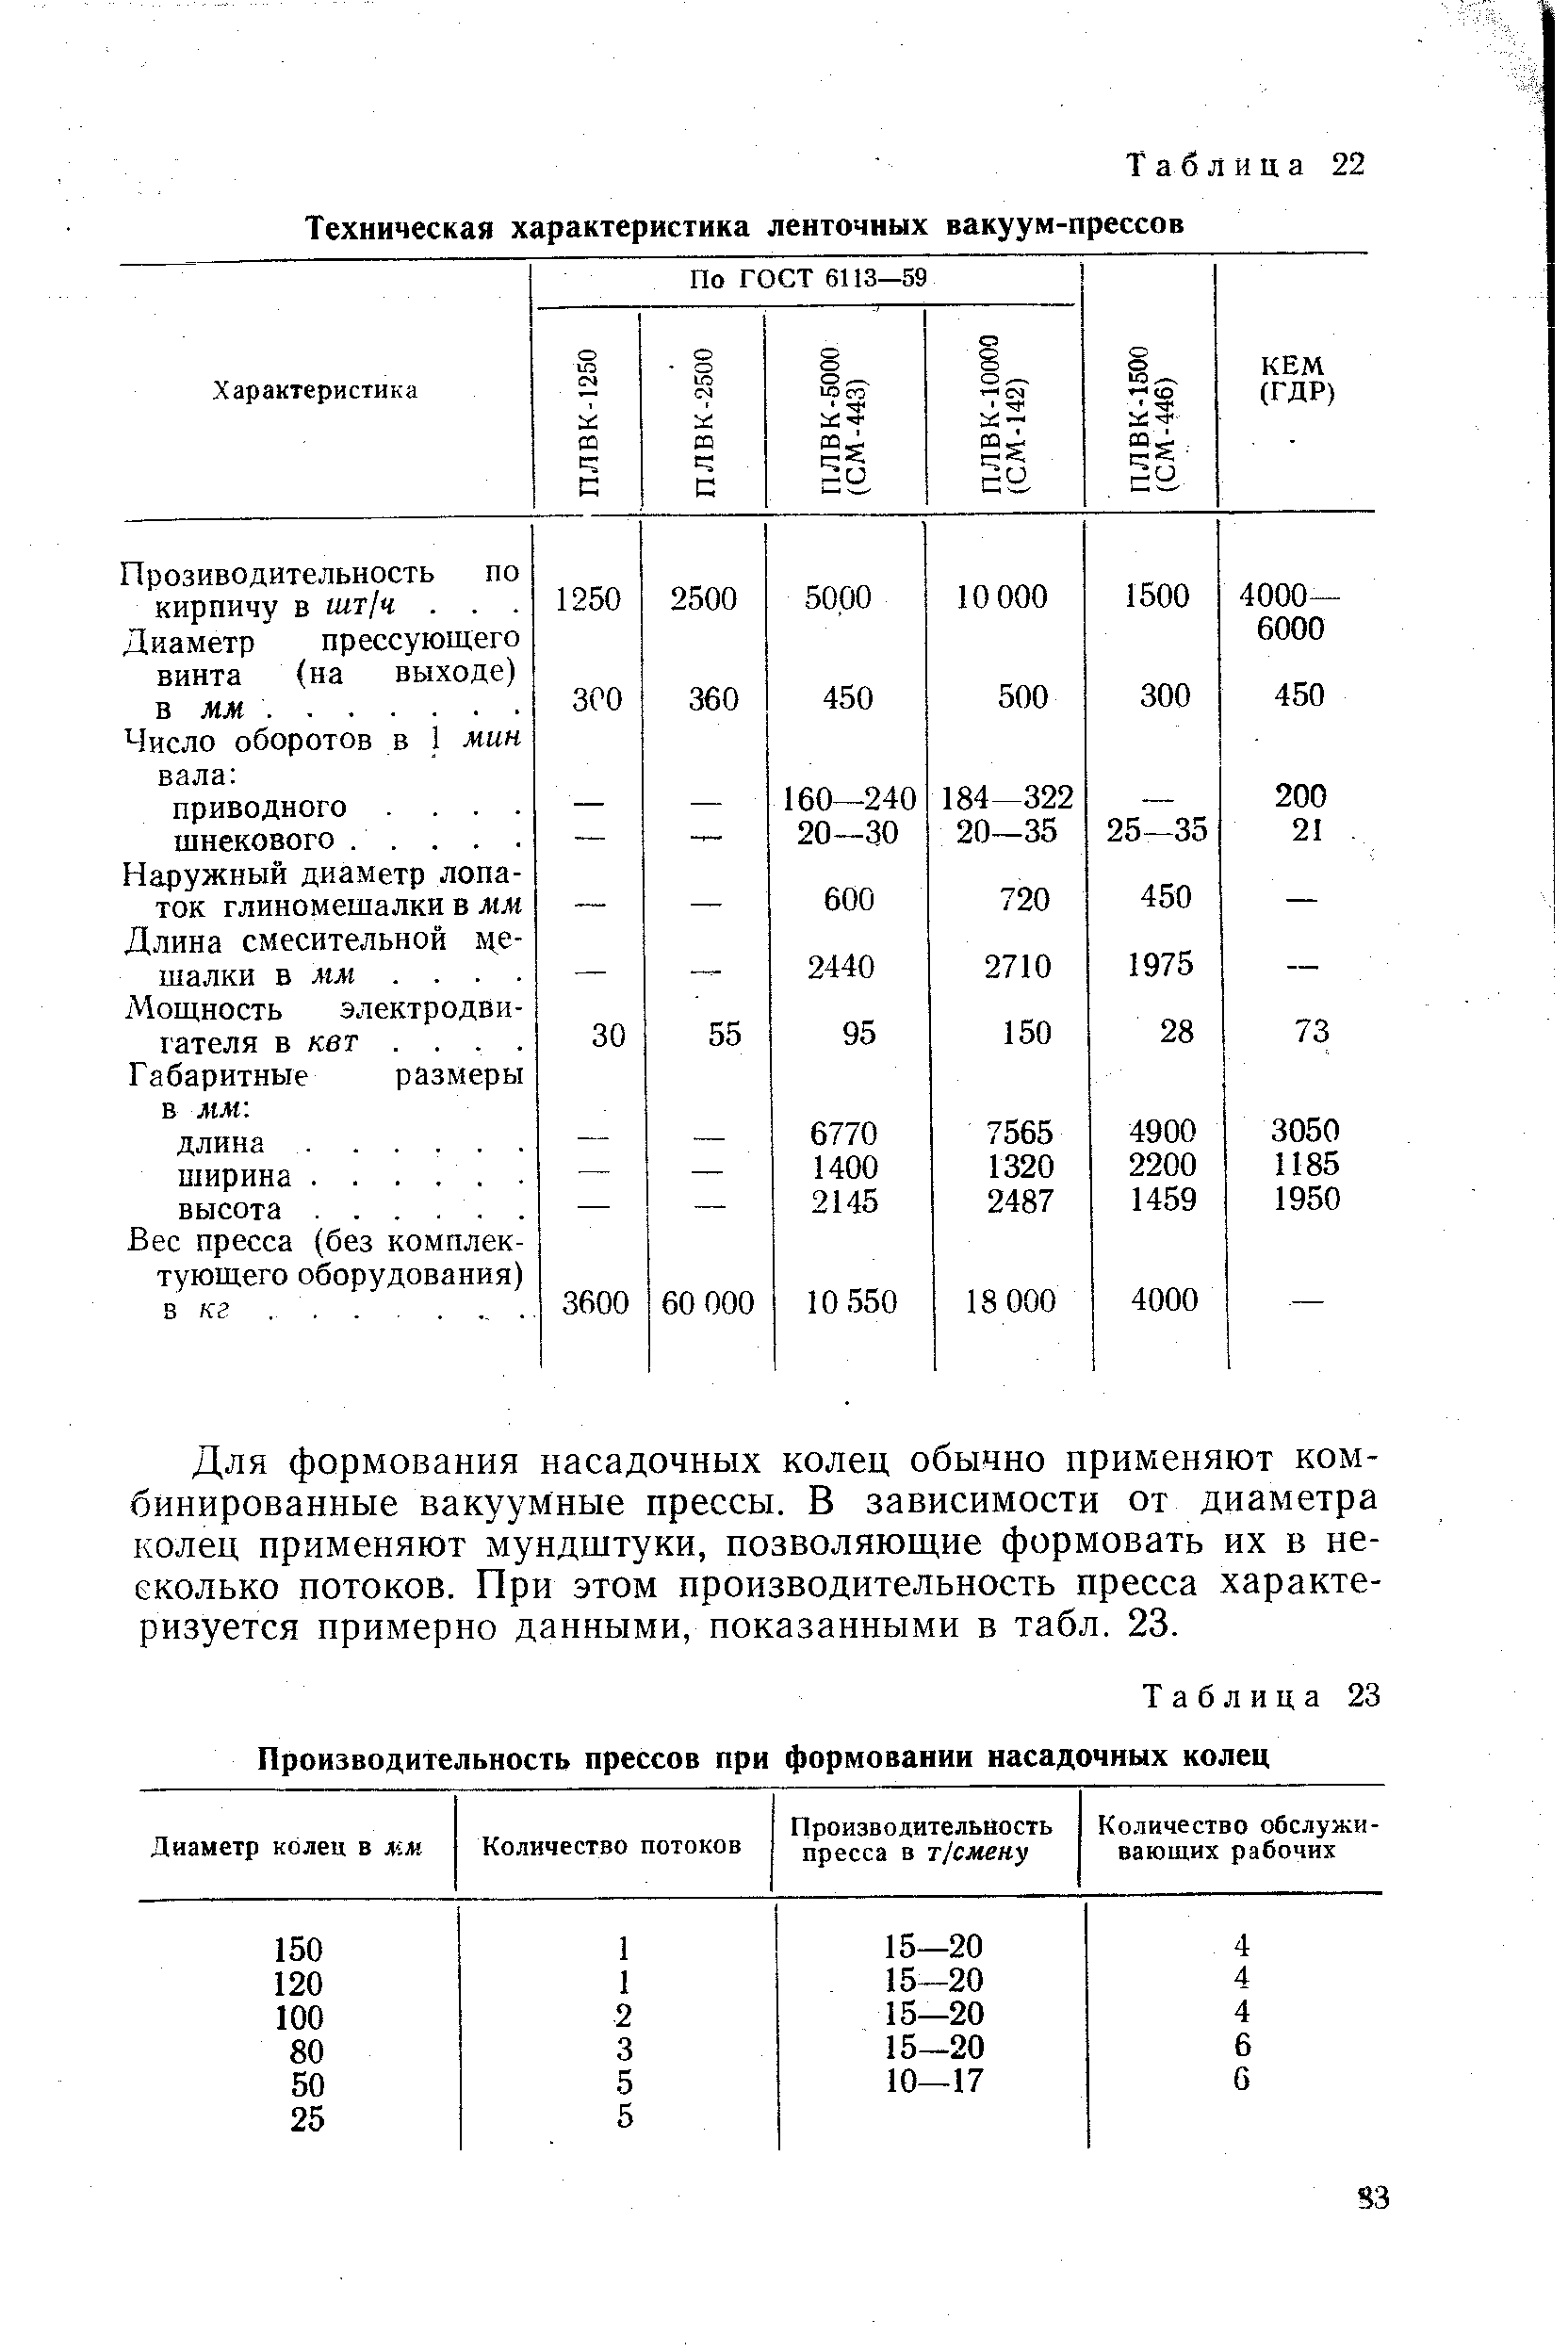 Таблица 22 Техническая характеристика ленточных вакуум-прессов
